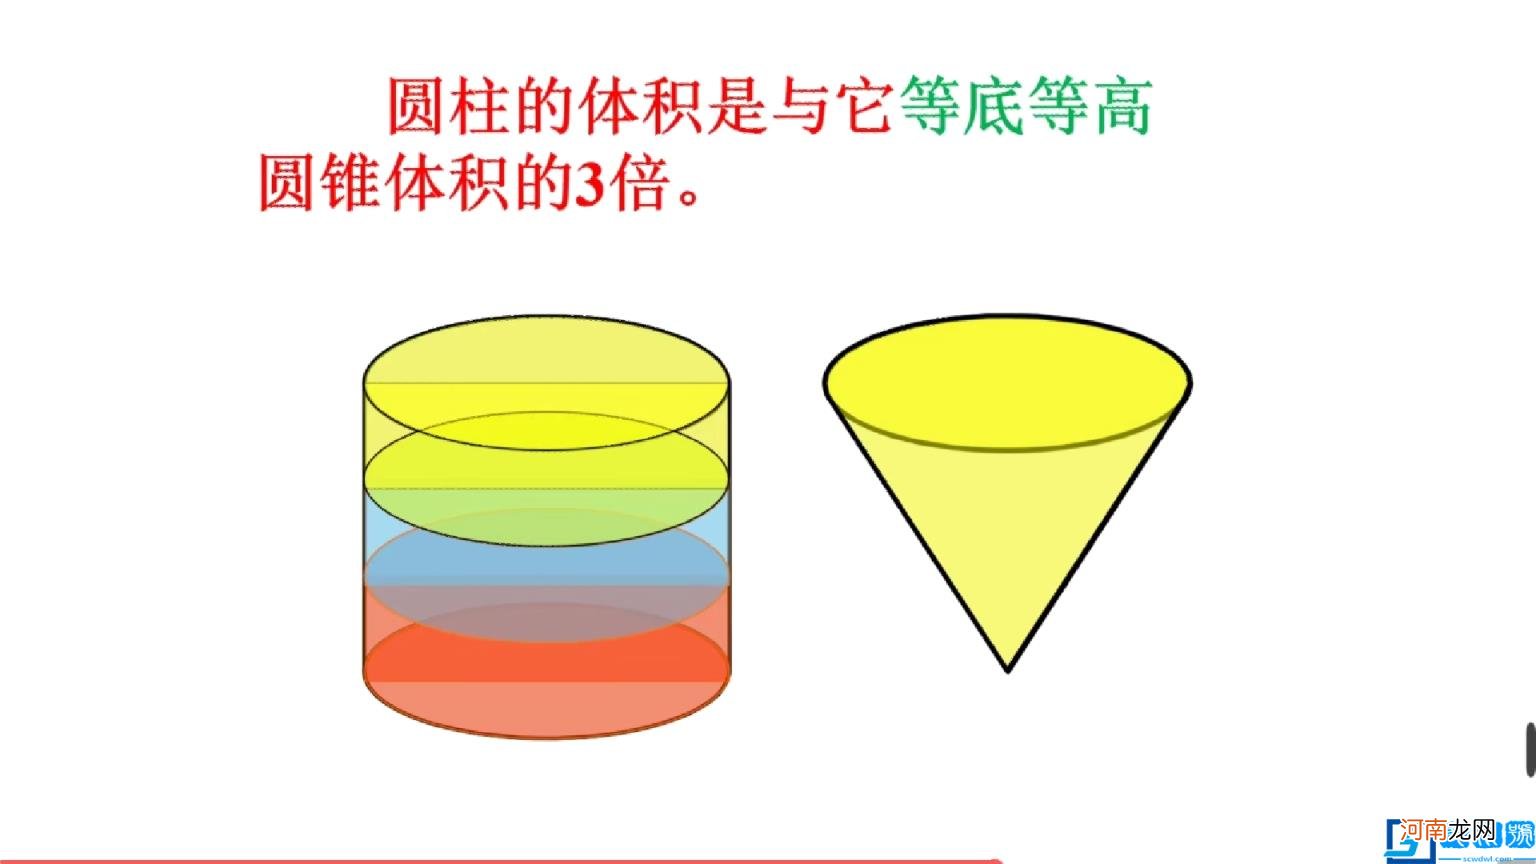 圆柱和圆锥的区别与联系 圆柱和圆锥的关系图